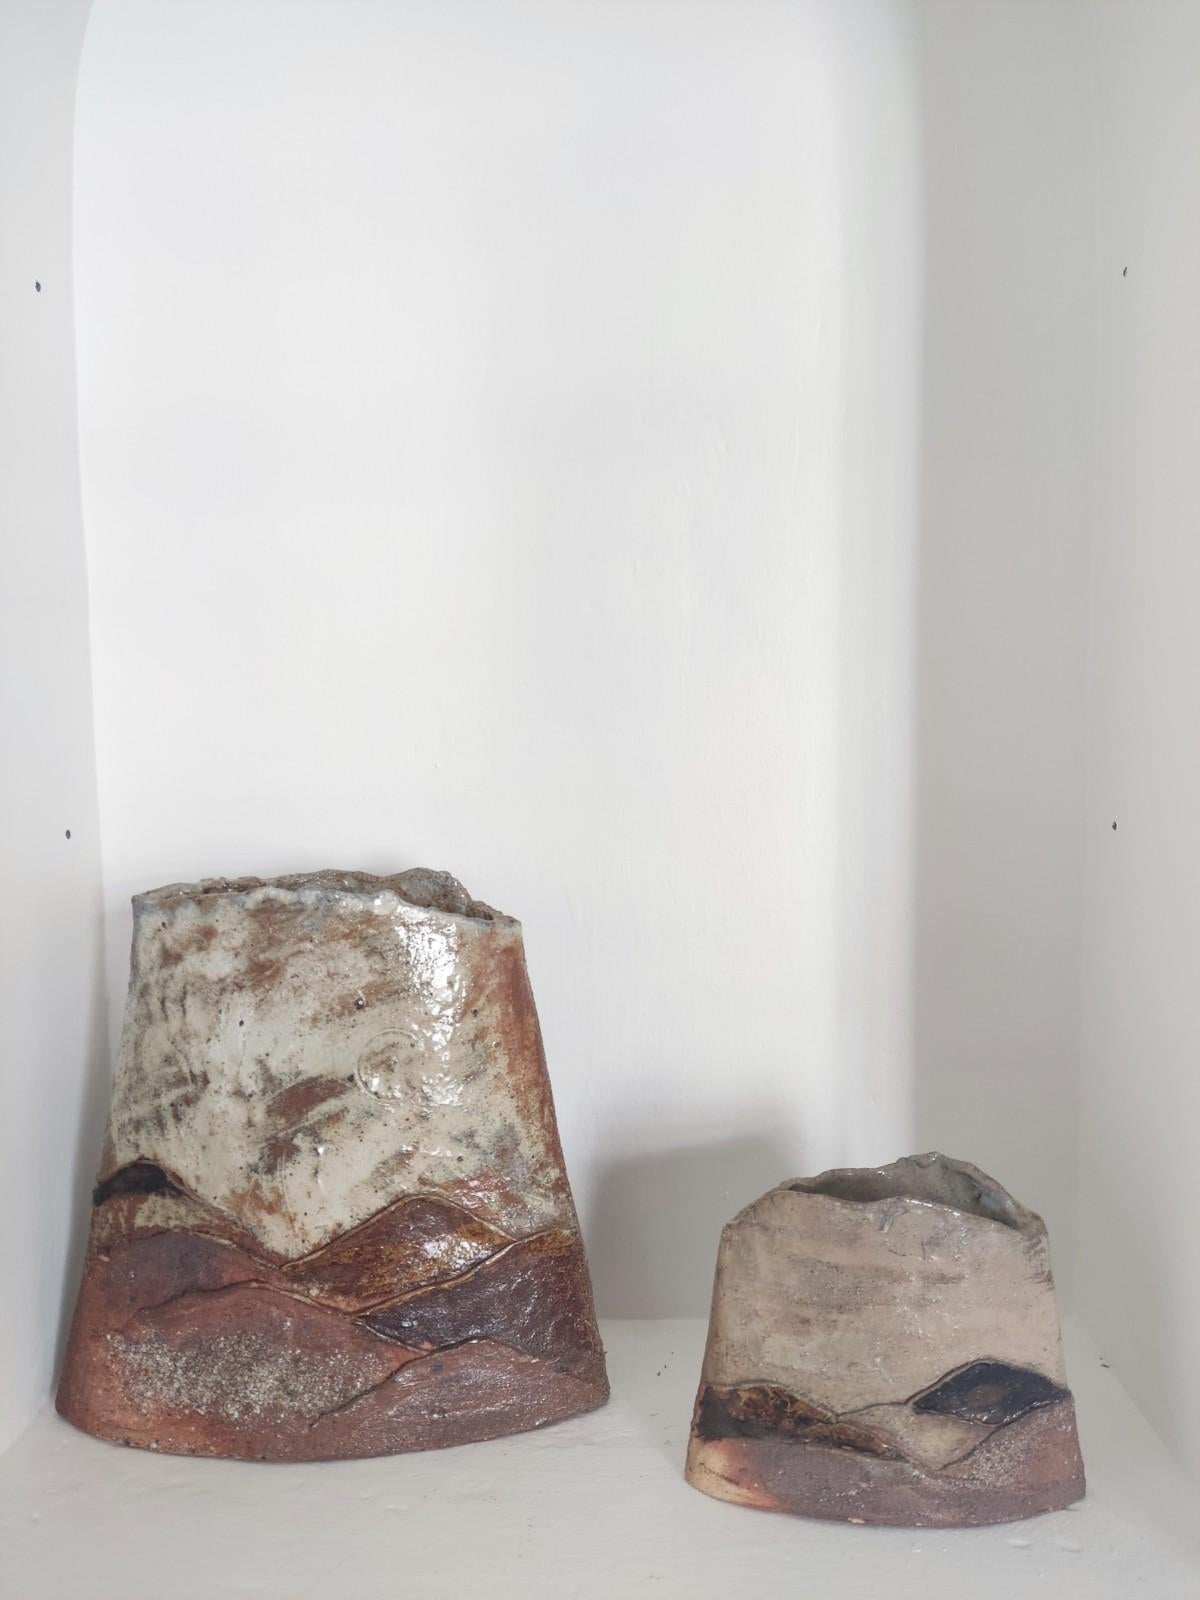 Ein Paar Keramikvasen von Claude Gaget, hergestellt in den 1970er Jahren in La Borne.
Aus Schamotte und emailliertem Sandstein. Diese Keramiken sind Teil der Serie 